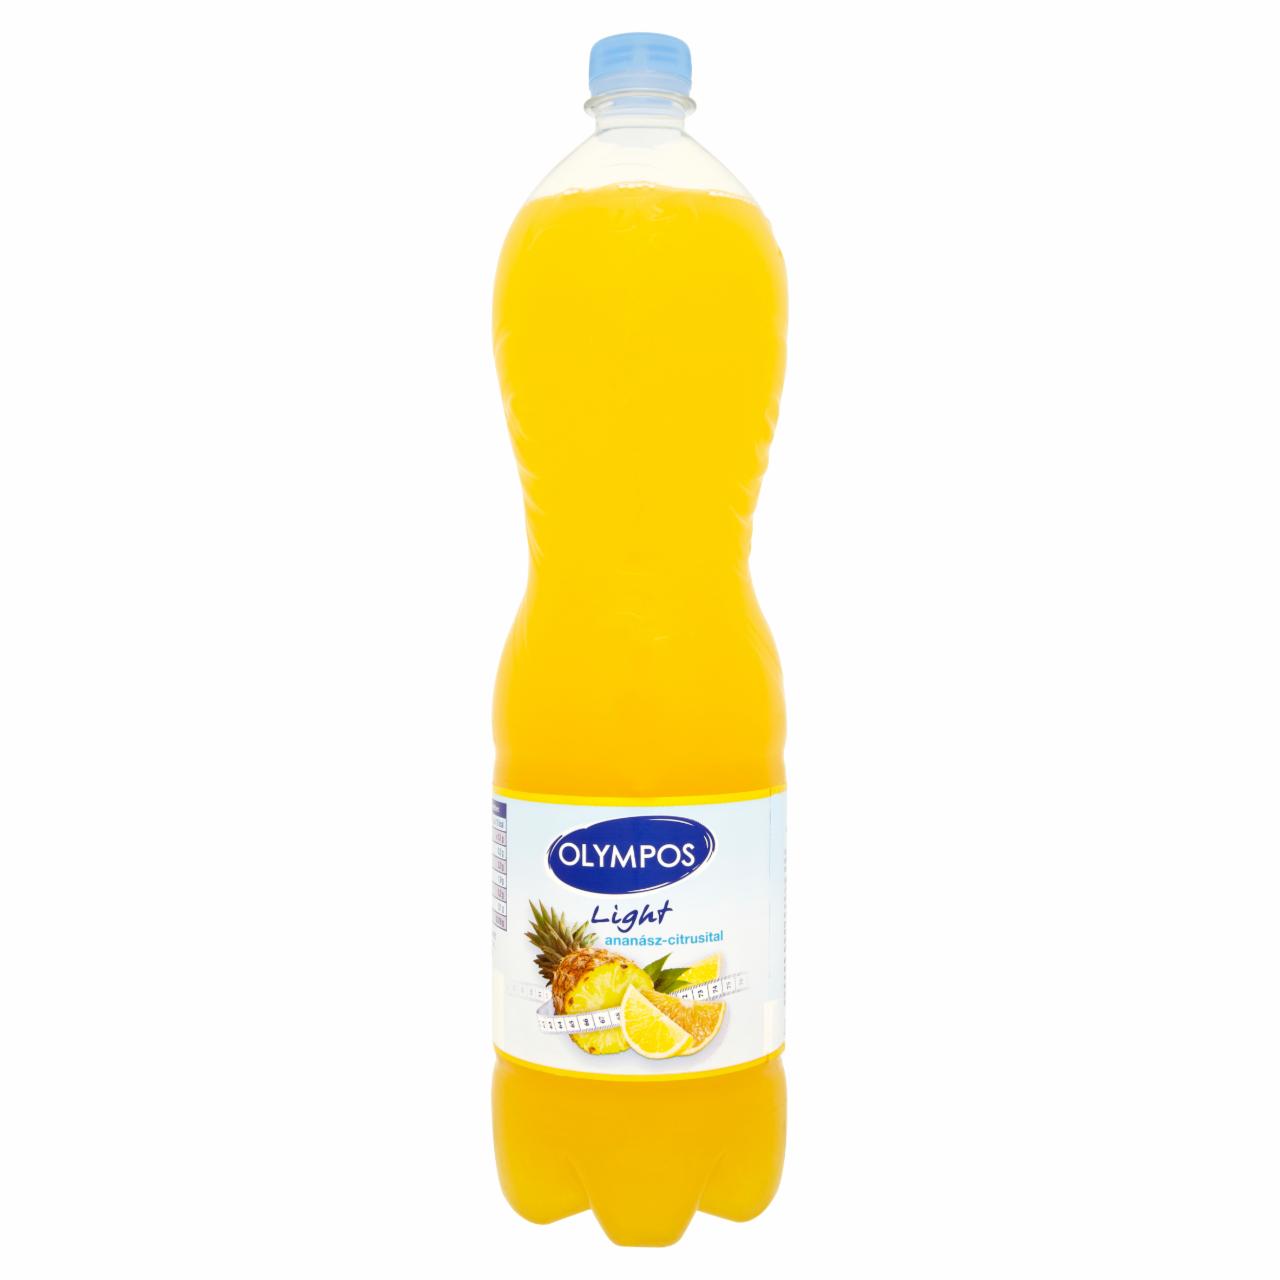 Képek - Olympos Light ananász-citrusital édesítőszerekkel 1,5 l